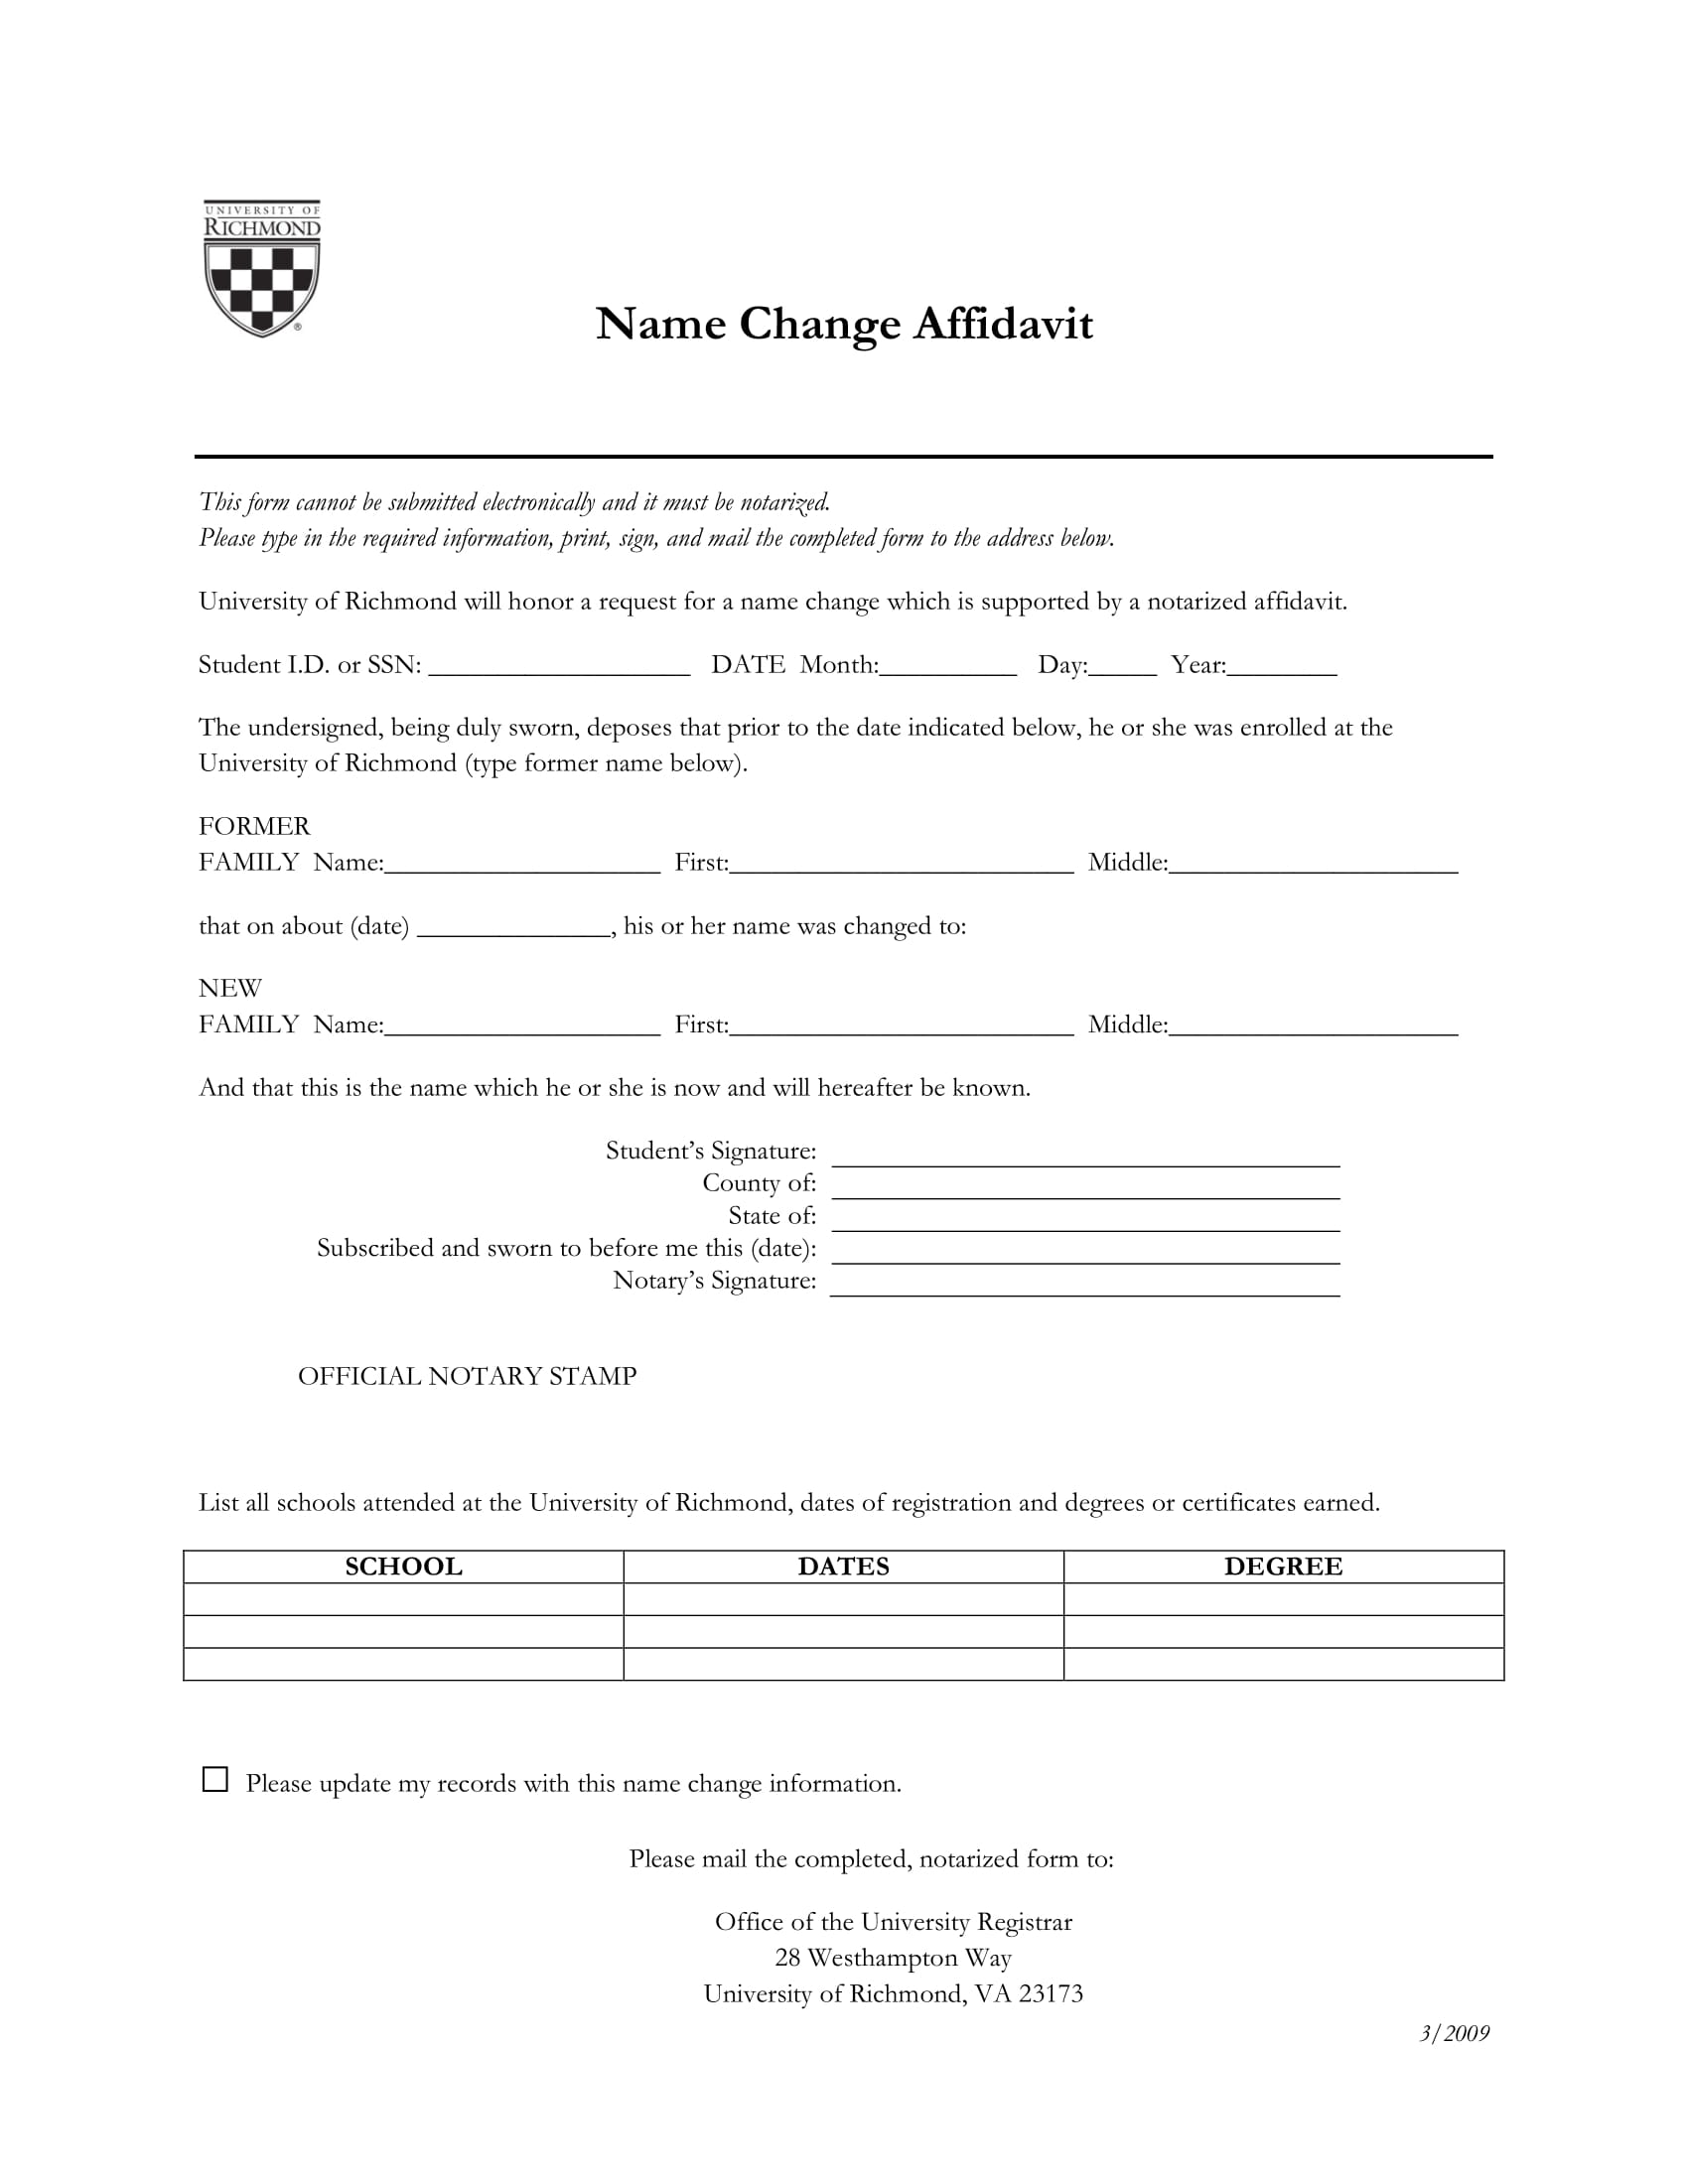 change of name affidavit example 1